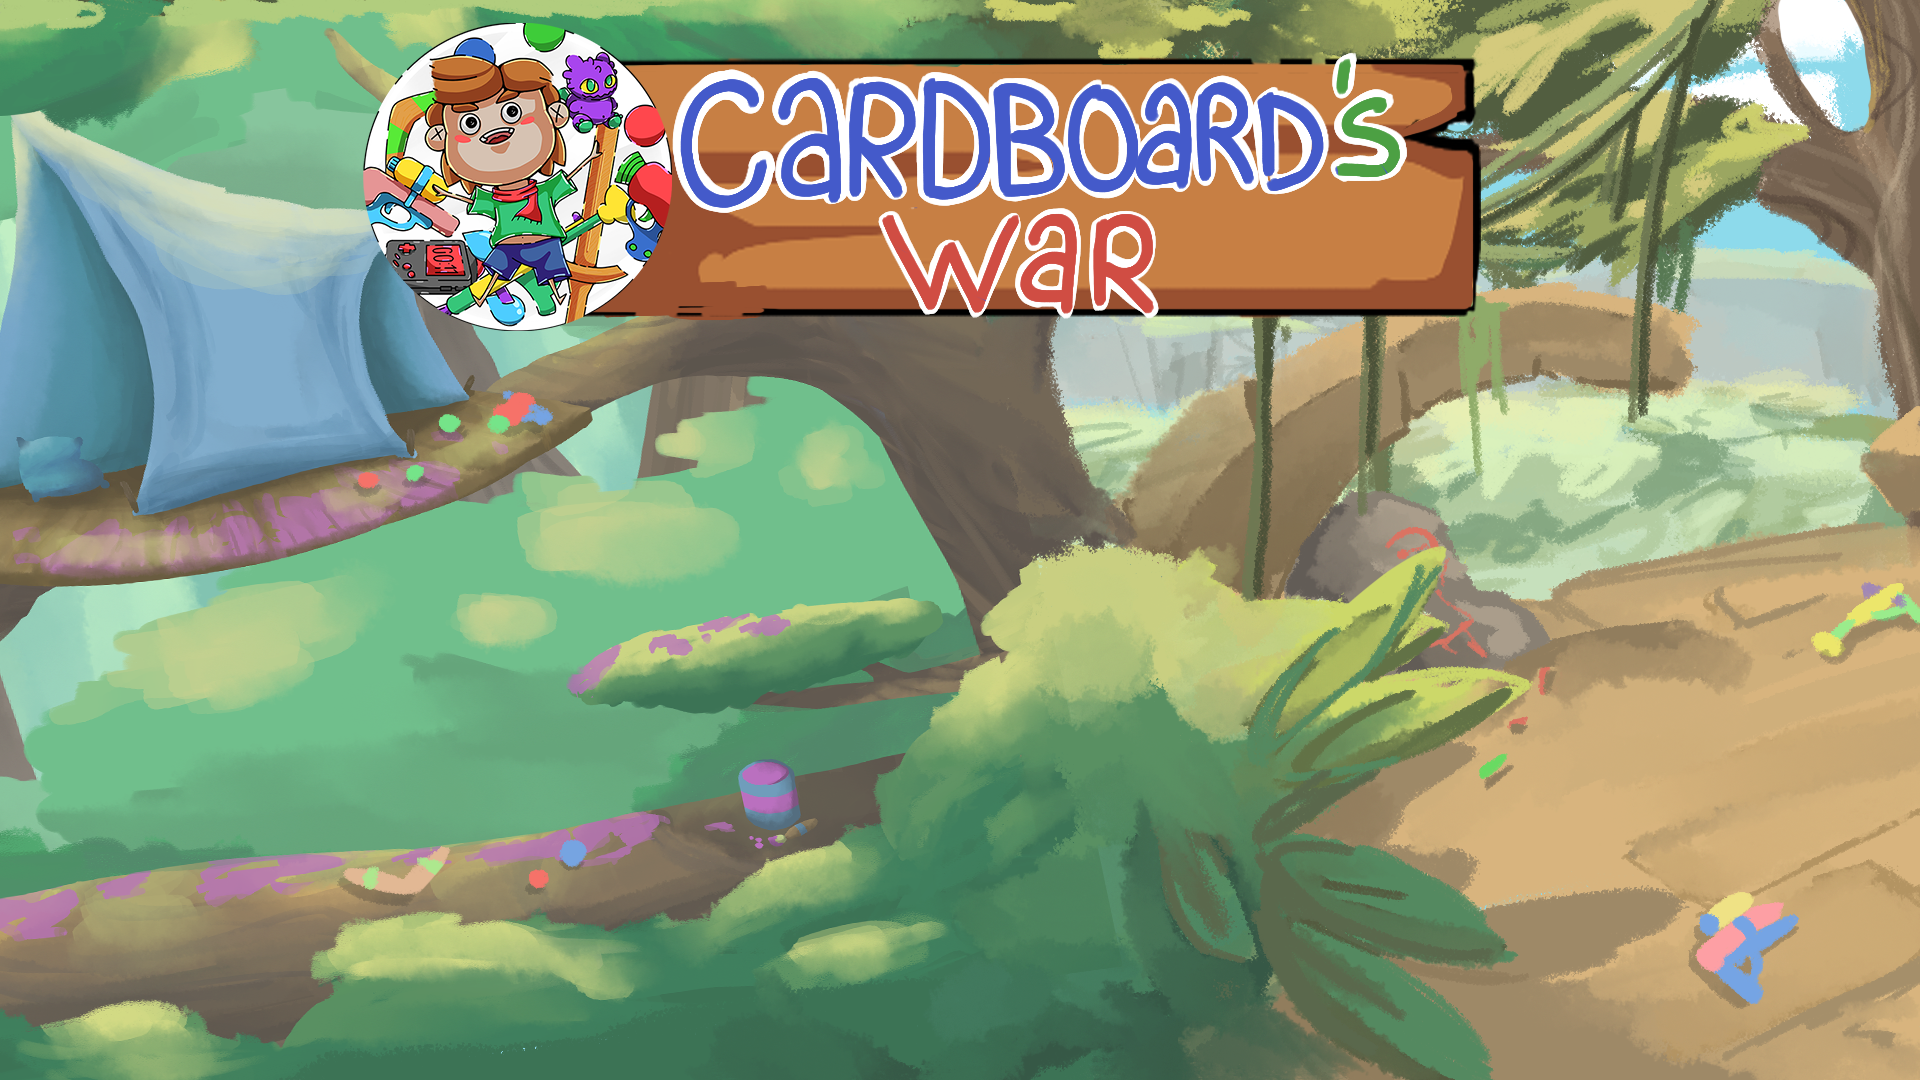 Cardboard's War